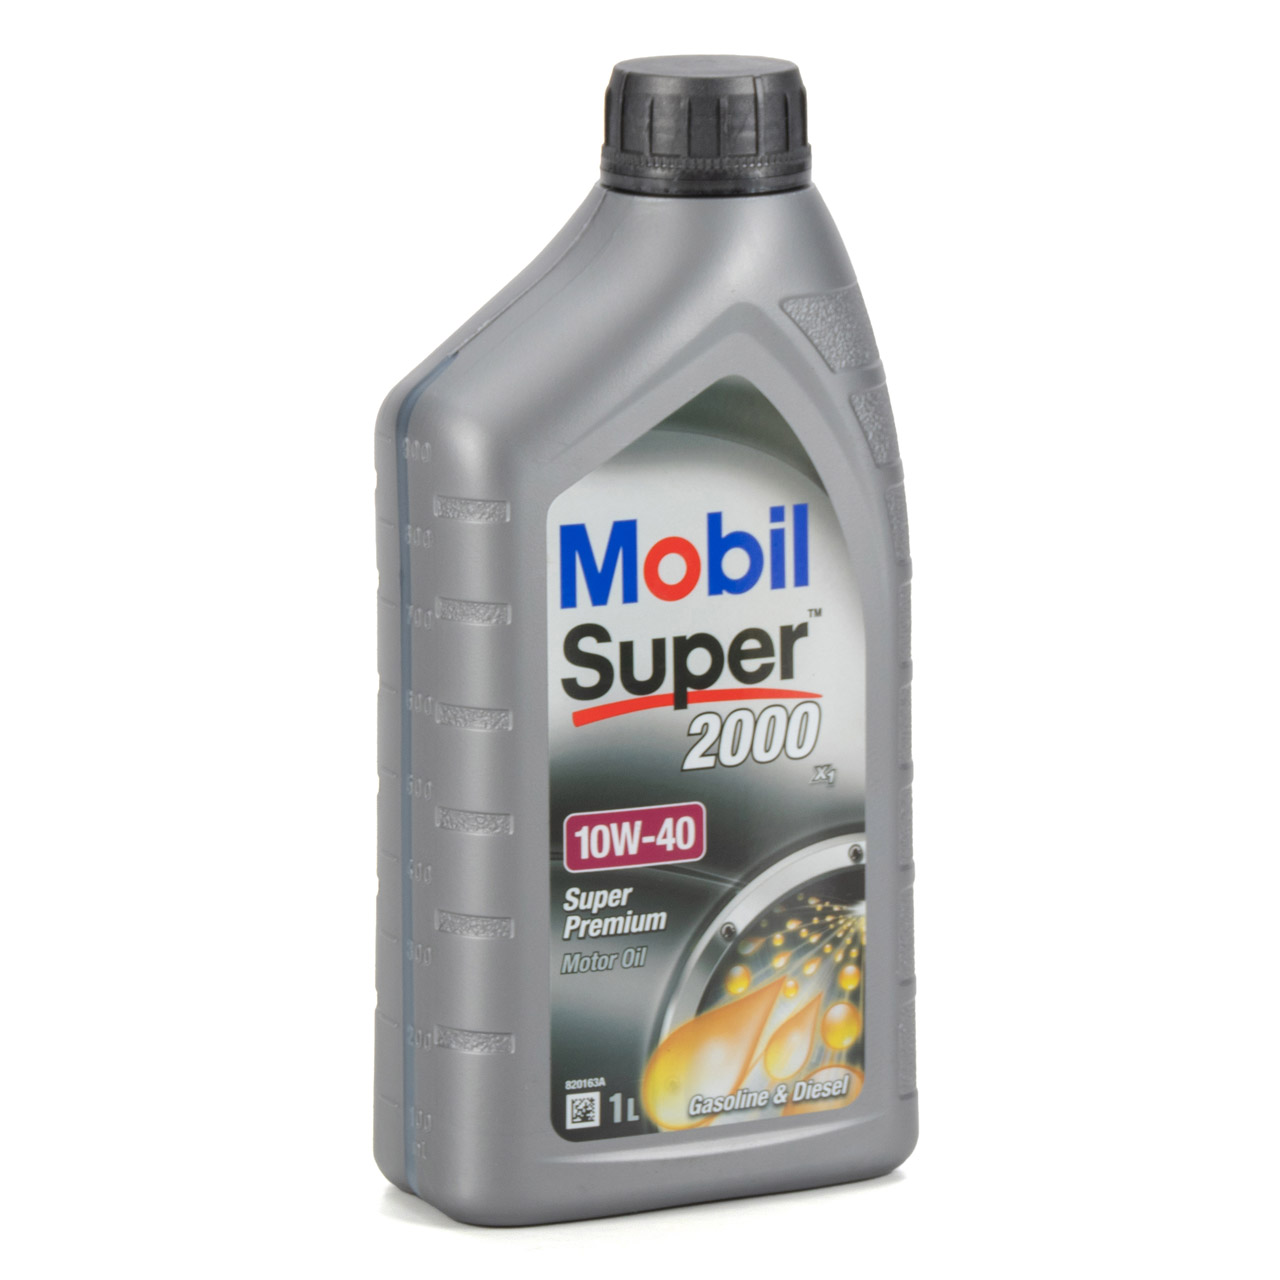 9L 9 Liter Mobil SUPER 2000 X1 10W40 Super Premium Motoröl Öl VW 501.01/505.00